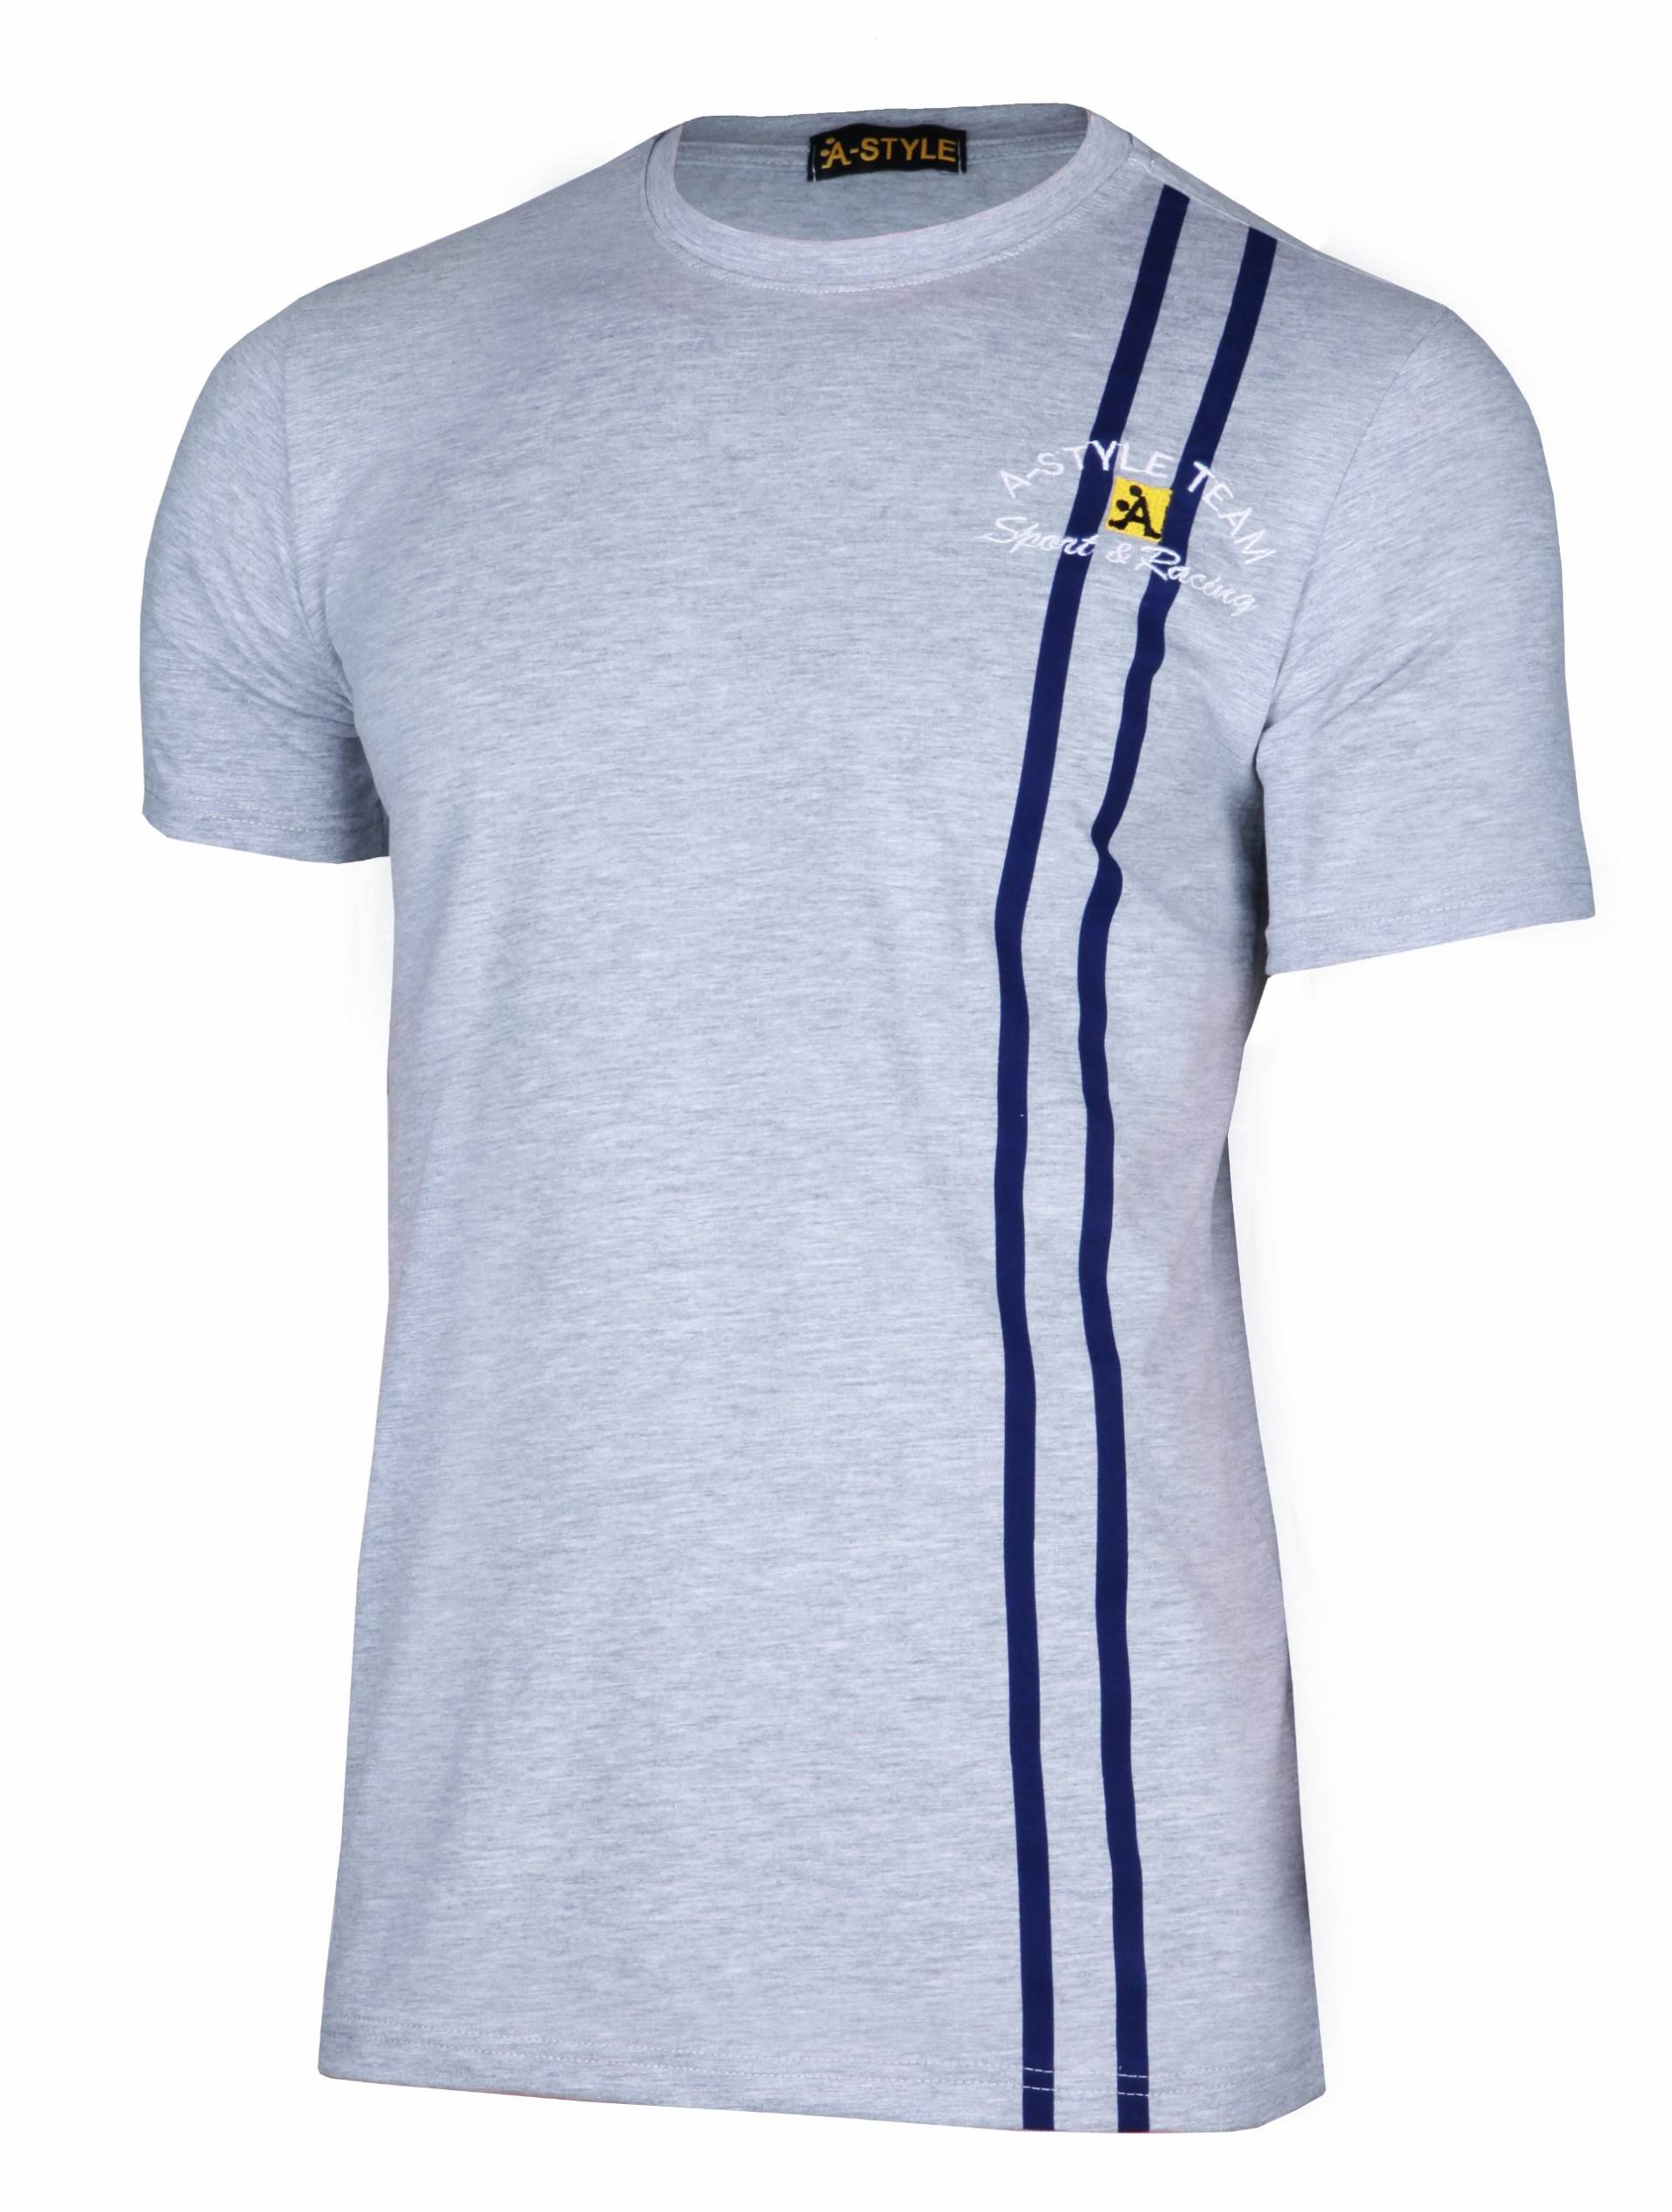 A-Style T-Shirt Stripes, Grau, L von A-Style